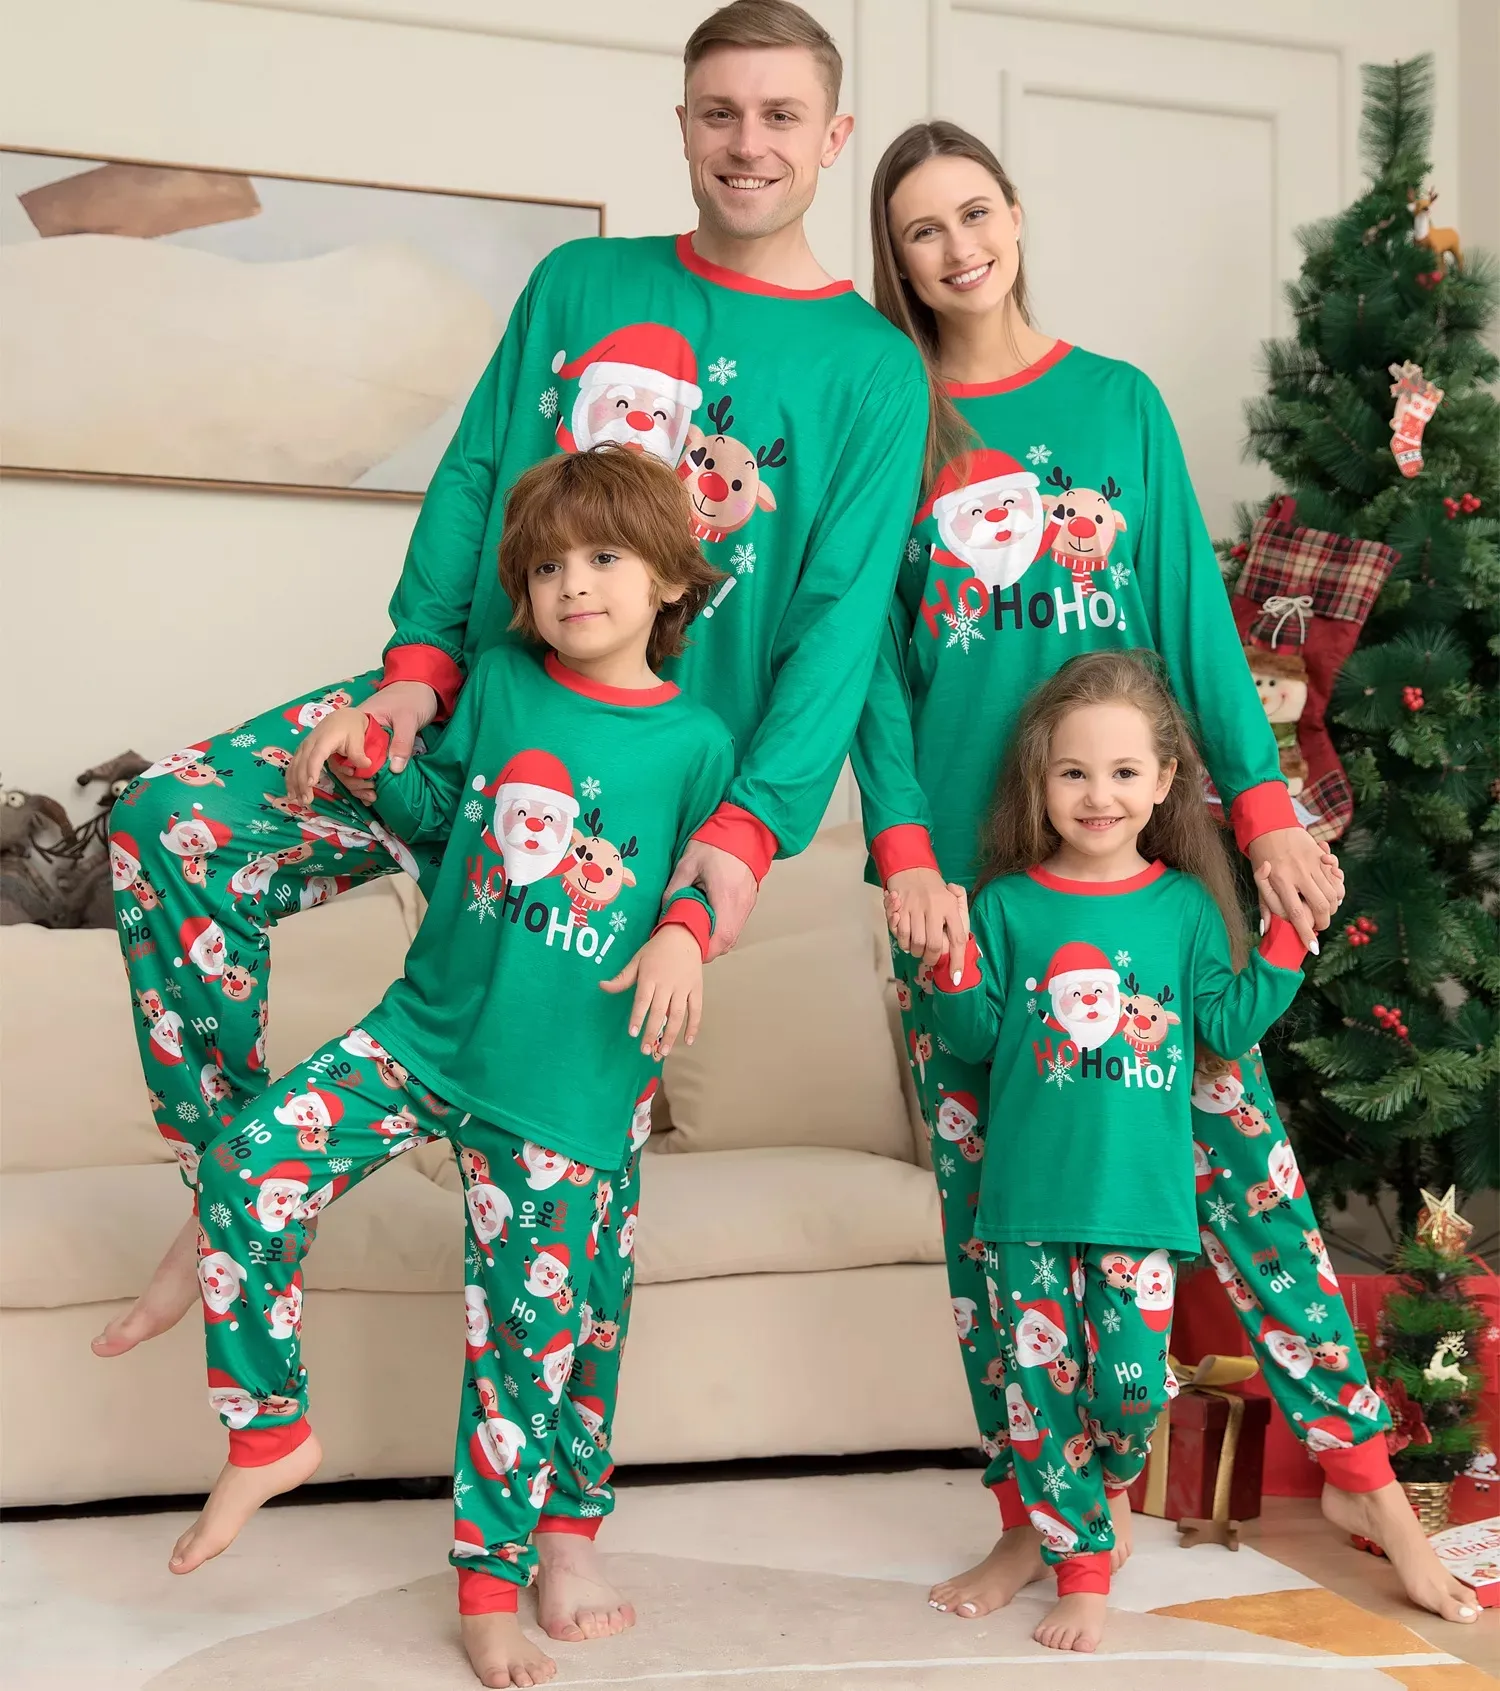 New Arrival Christmas Pjs Family Kids Christmas Pajamas Children Sleepwear Family Christmas Pajamas